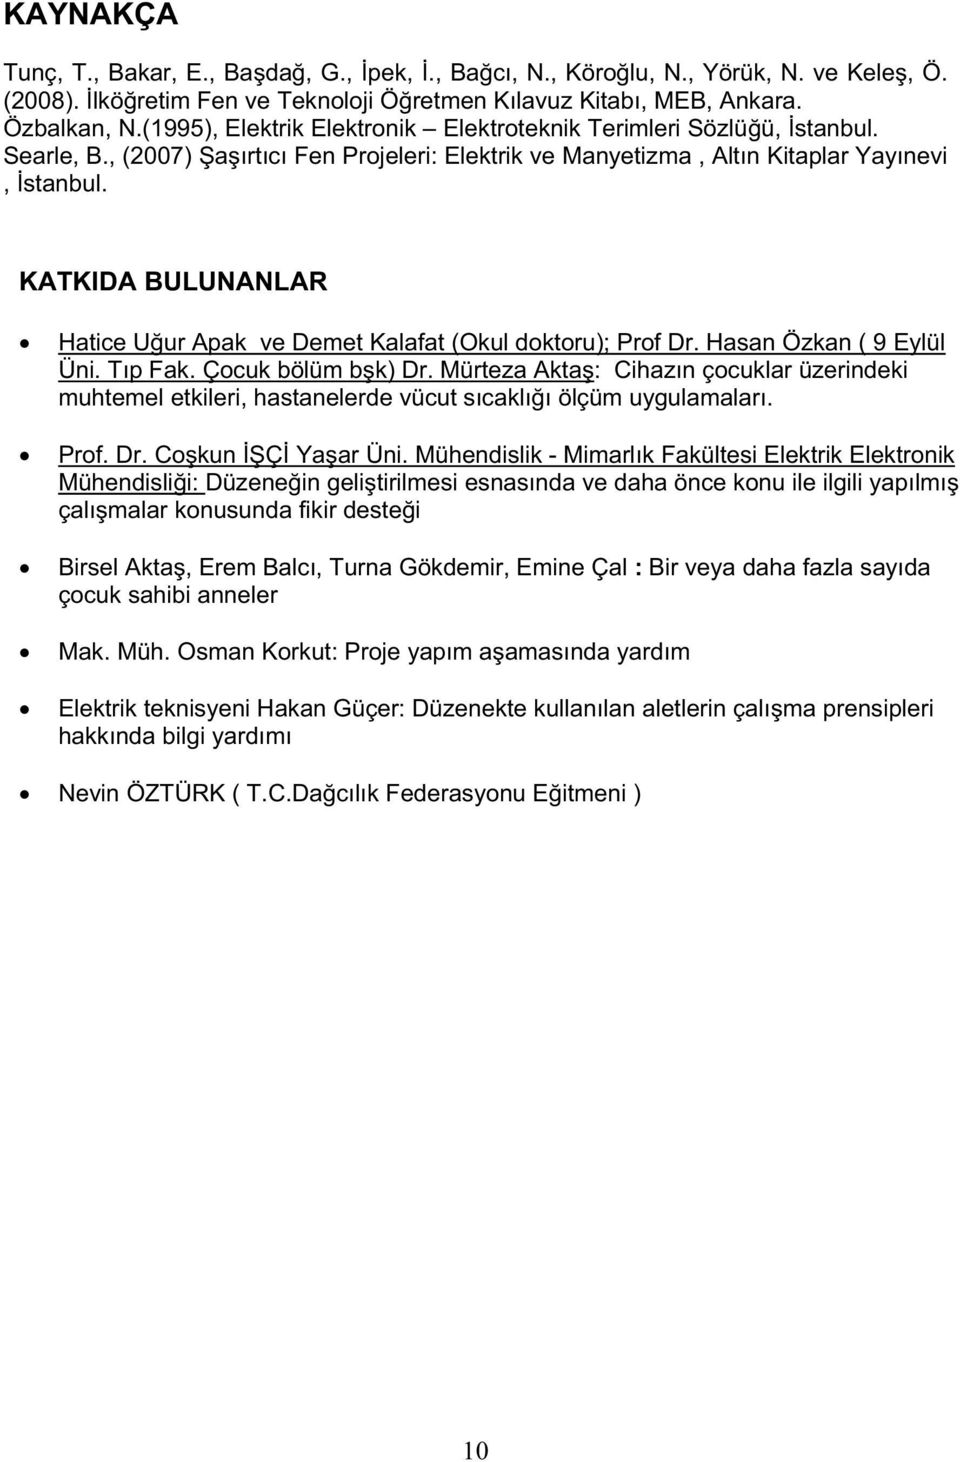 KATKIDA BULUNANLAR Hatice Uur Apak ve Demet Kalafat (Okul doktoru); Prof Dr. Hasan Özkan ( 9 Eylül Üni. Tıp Fak. Çocuk bölüm bk) Dr.